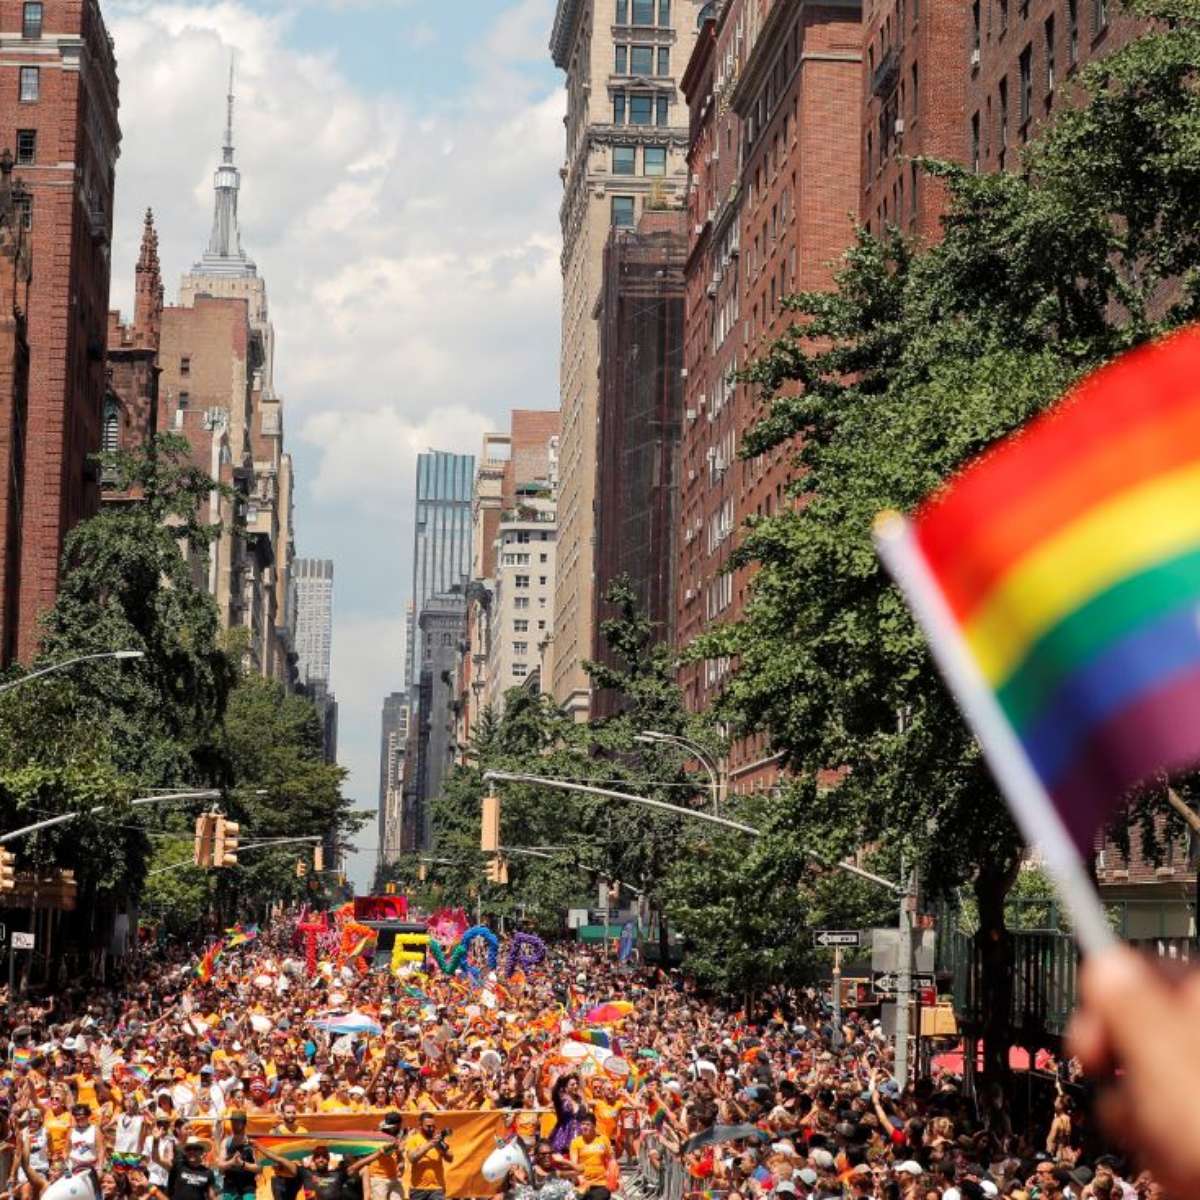 1º Parada do Orgulho LGBT de Patrocínio terá palestras sobre inclusão